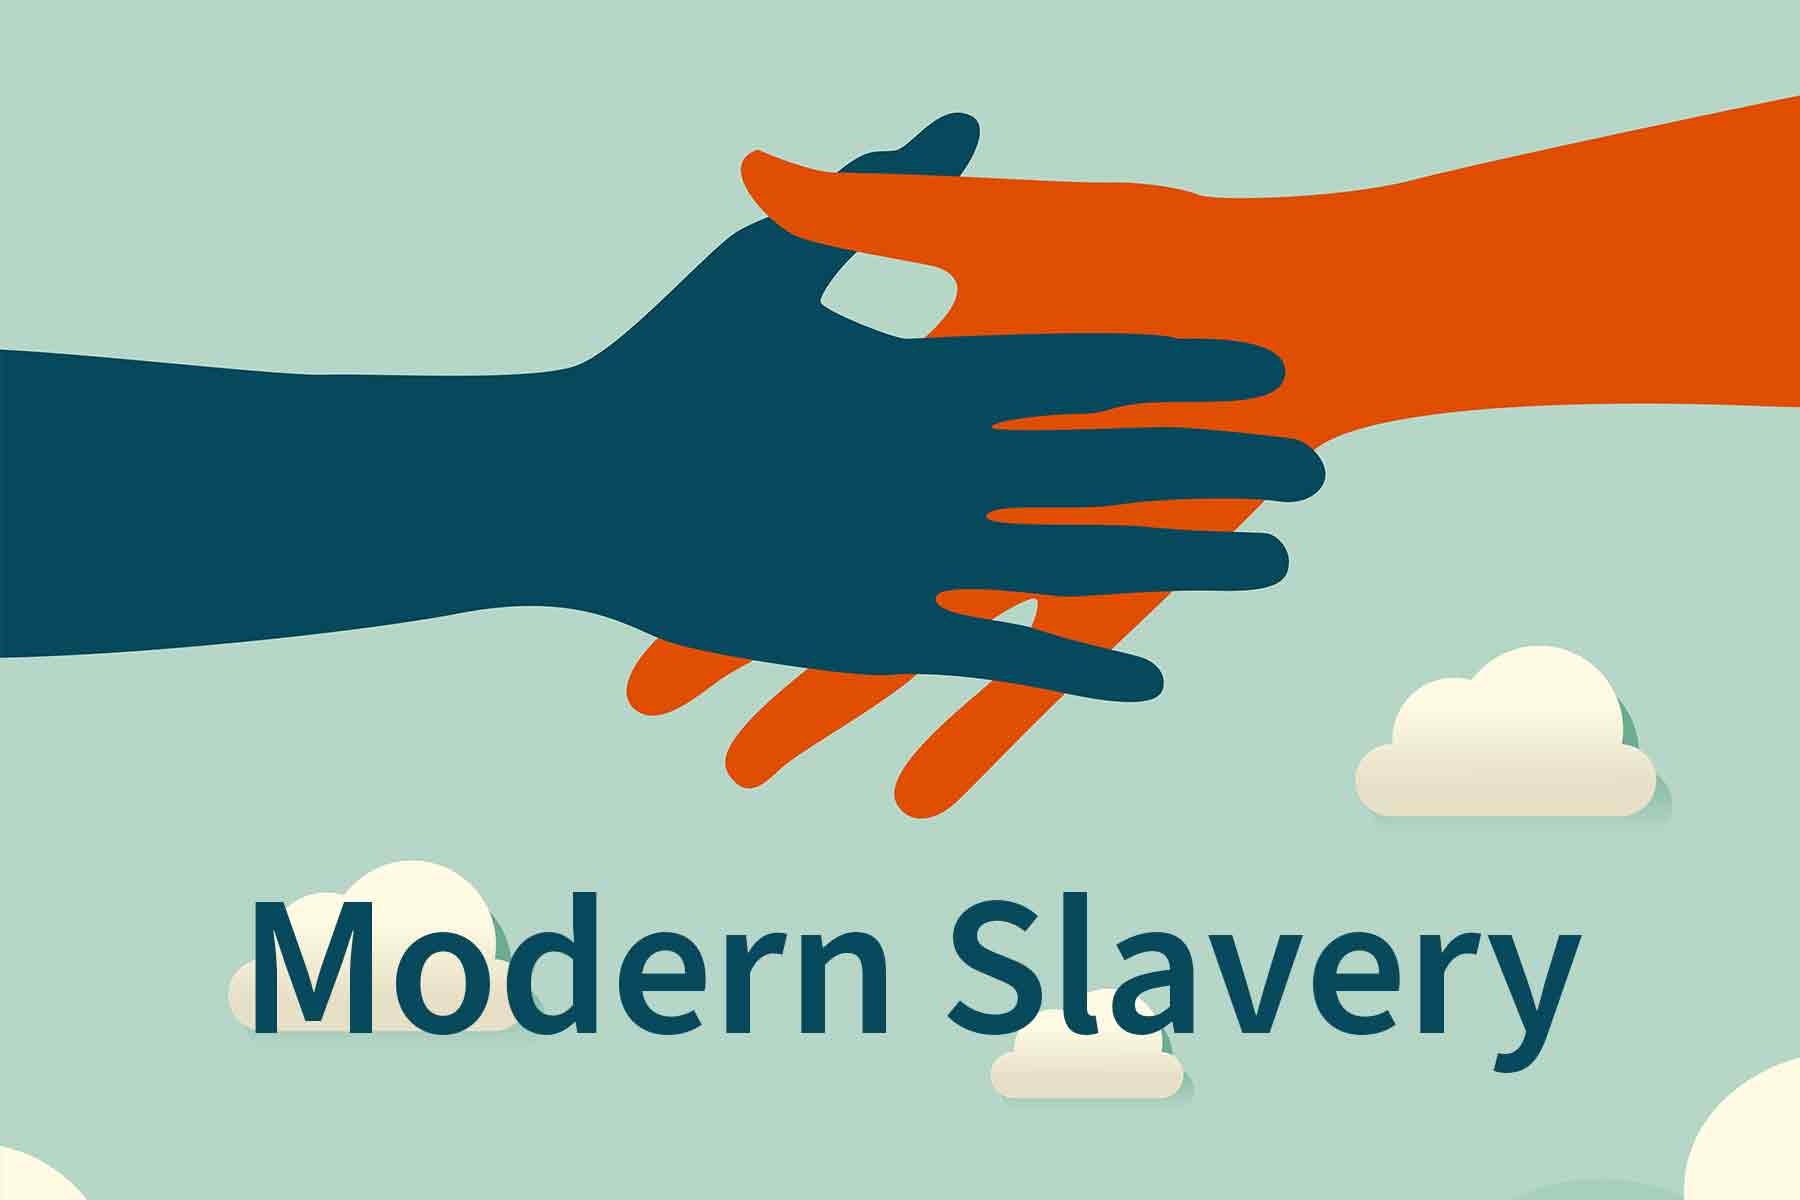 Modern-slavery-min